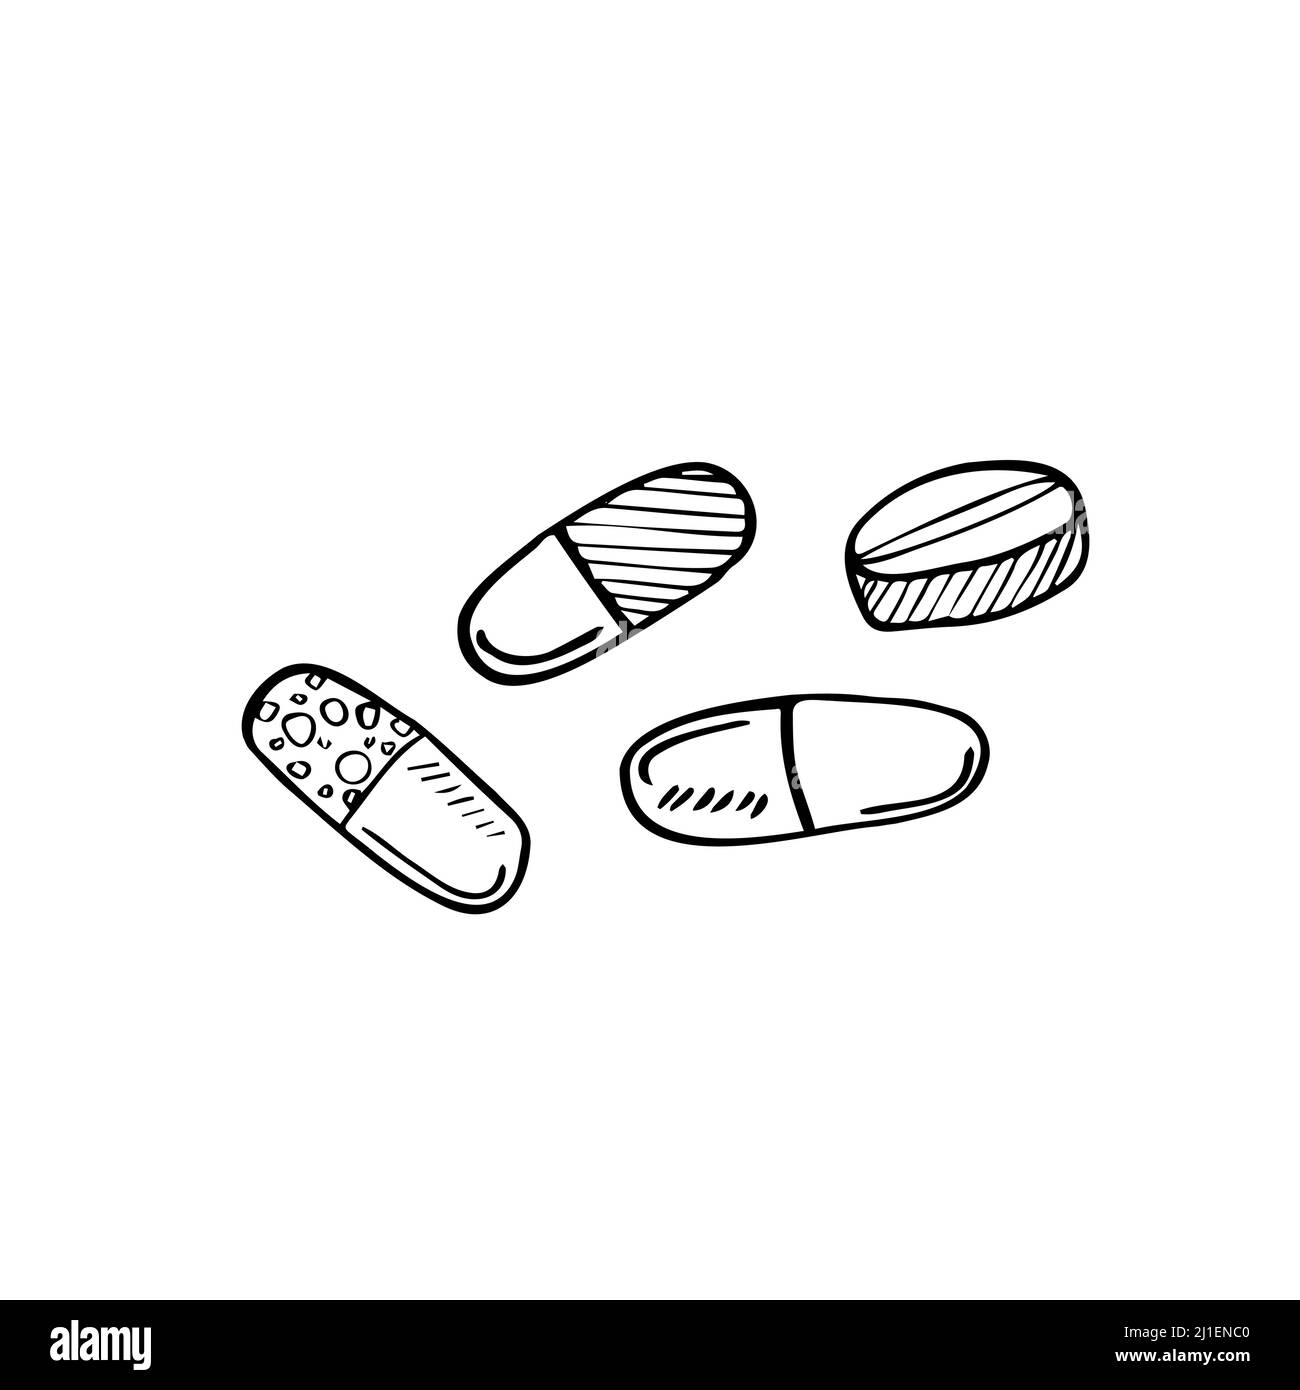 Prescrizione di farmaci e doodle medicina, disegno a mano vettore doodle illustrazione di varie compresse medicina e pillole di droga per scopi medici Illustrazione Vettoriale